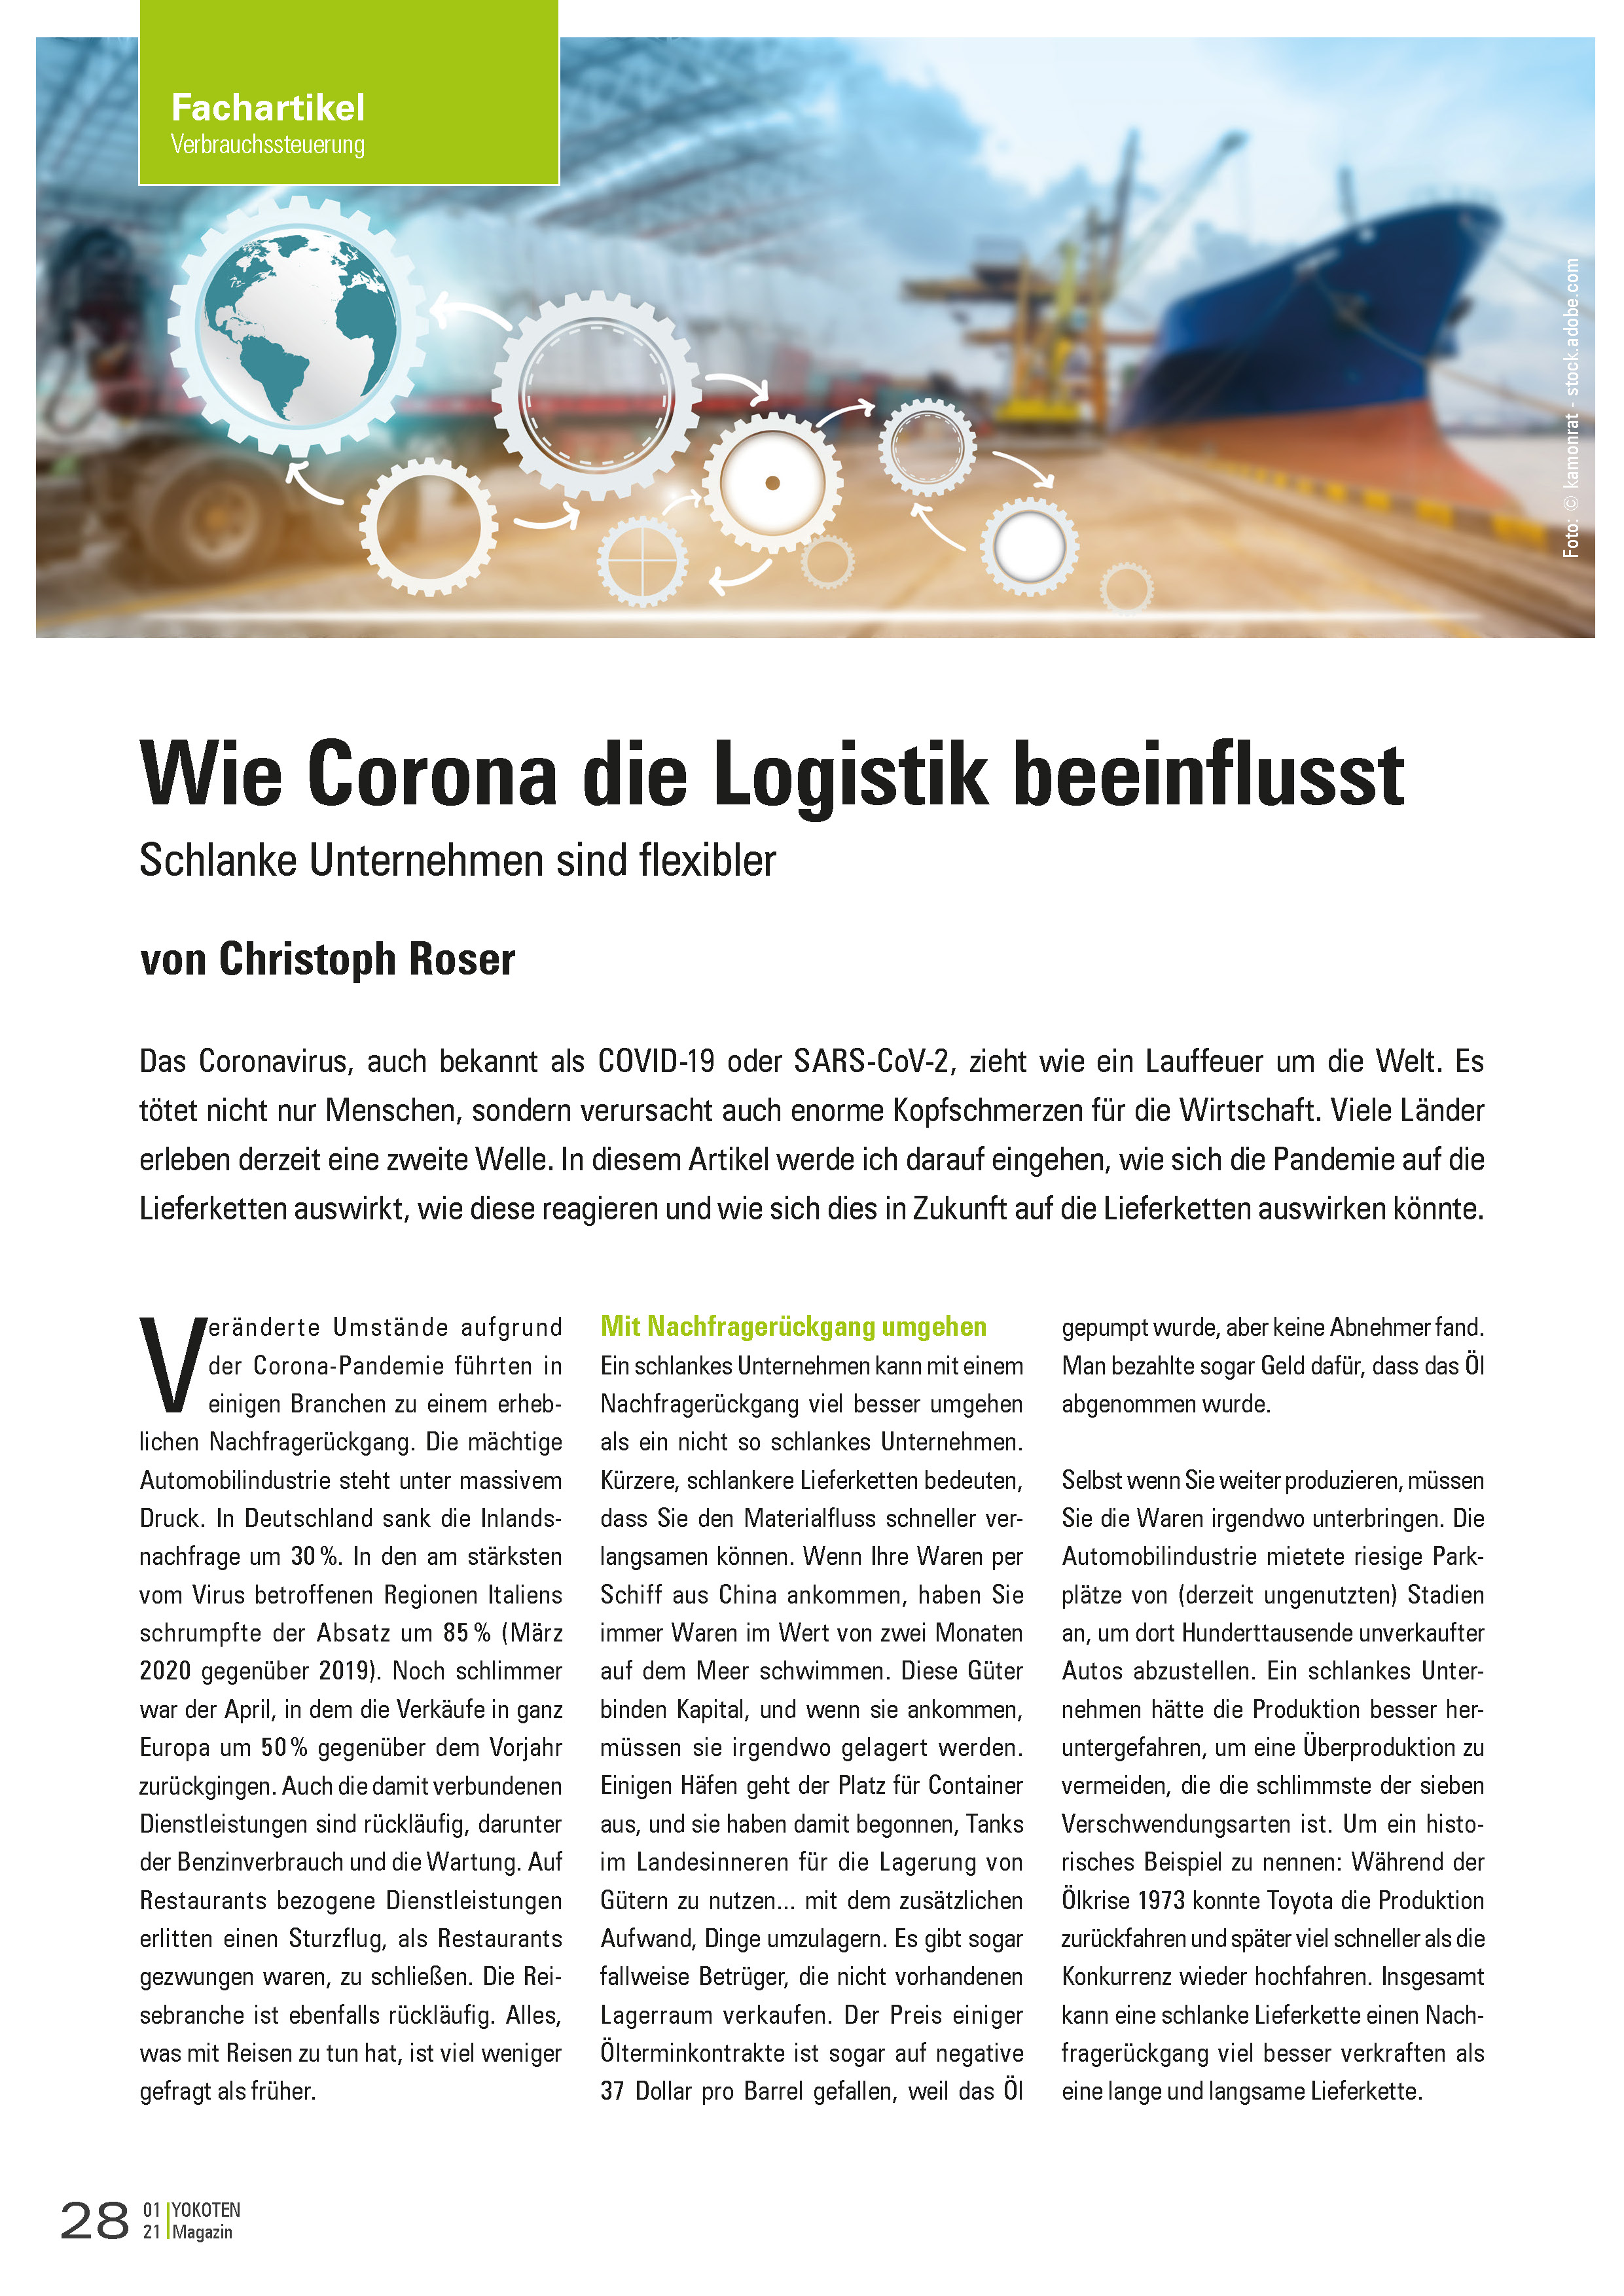 YOKOTEN-Artikel: Wie Corona die Logistik beeinflusst